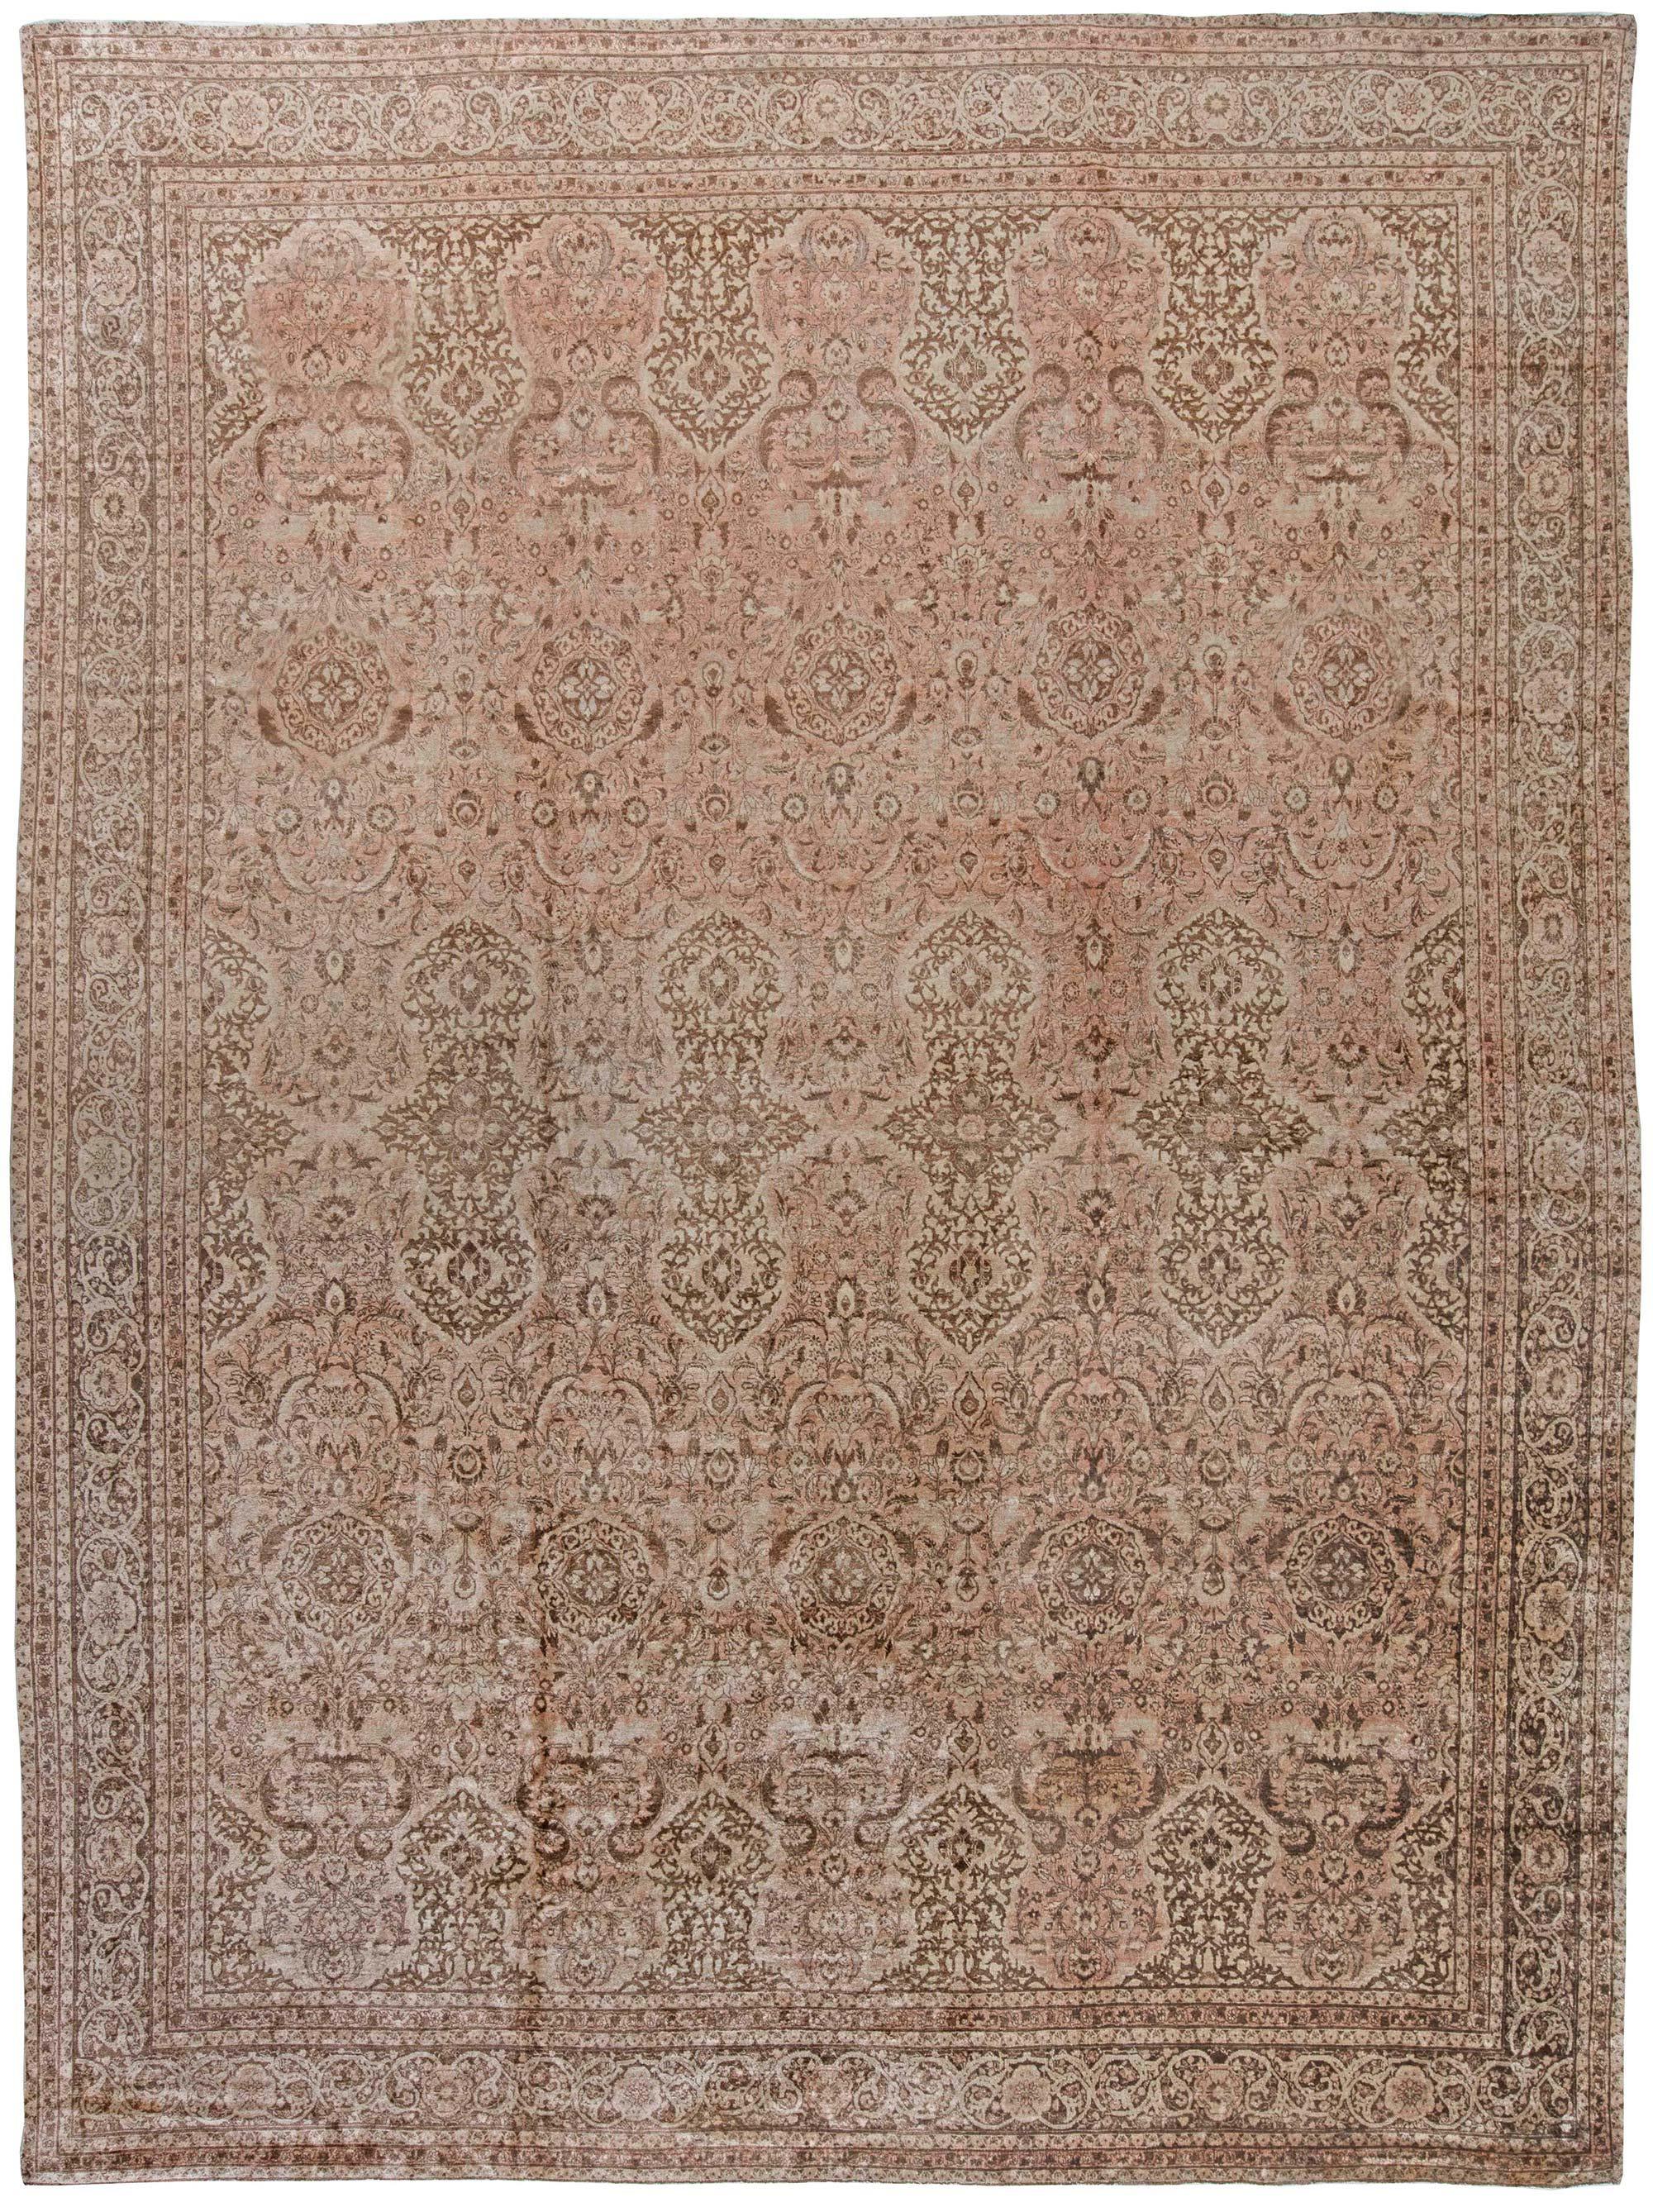 Vintage Persian Tabriz Brown Handmade Wool Rug For Sale